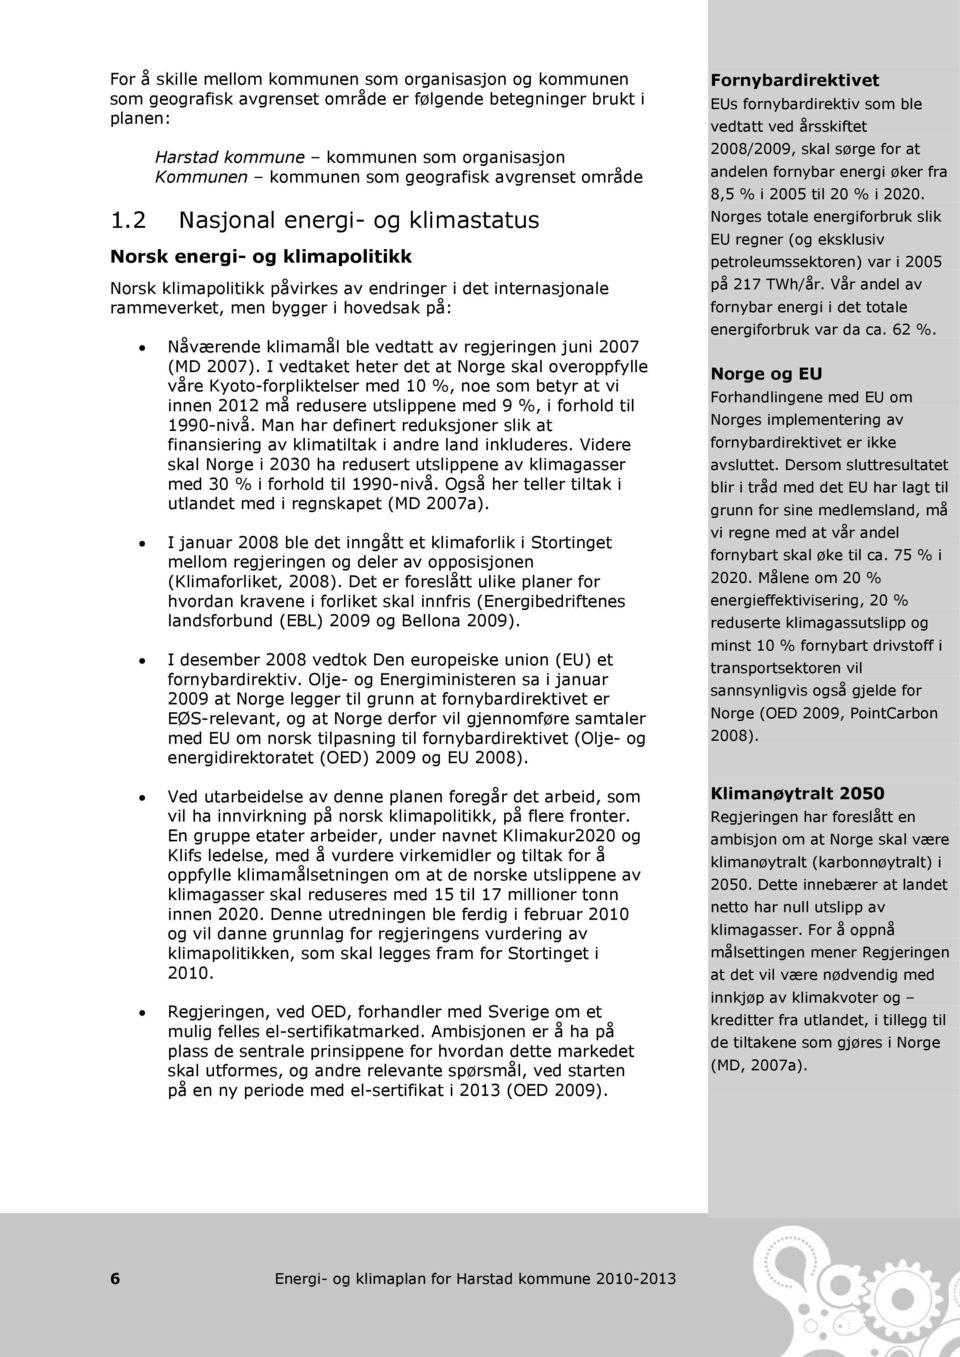 2 Nasjonal energi- og klimastatus Norsk energi- og klimapolitikk Norsk klimapolitikk påvirkes av endringer i det internasjonale rammeverket, men bygger i hovedsak på: Nåværende klimamål ble vedtatt